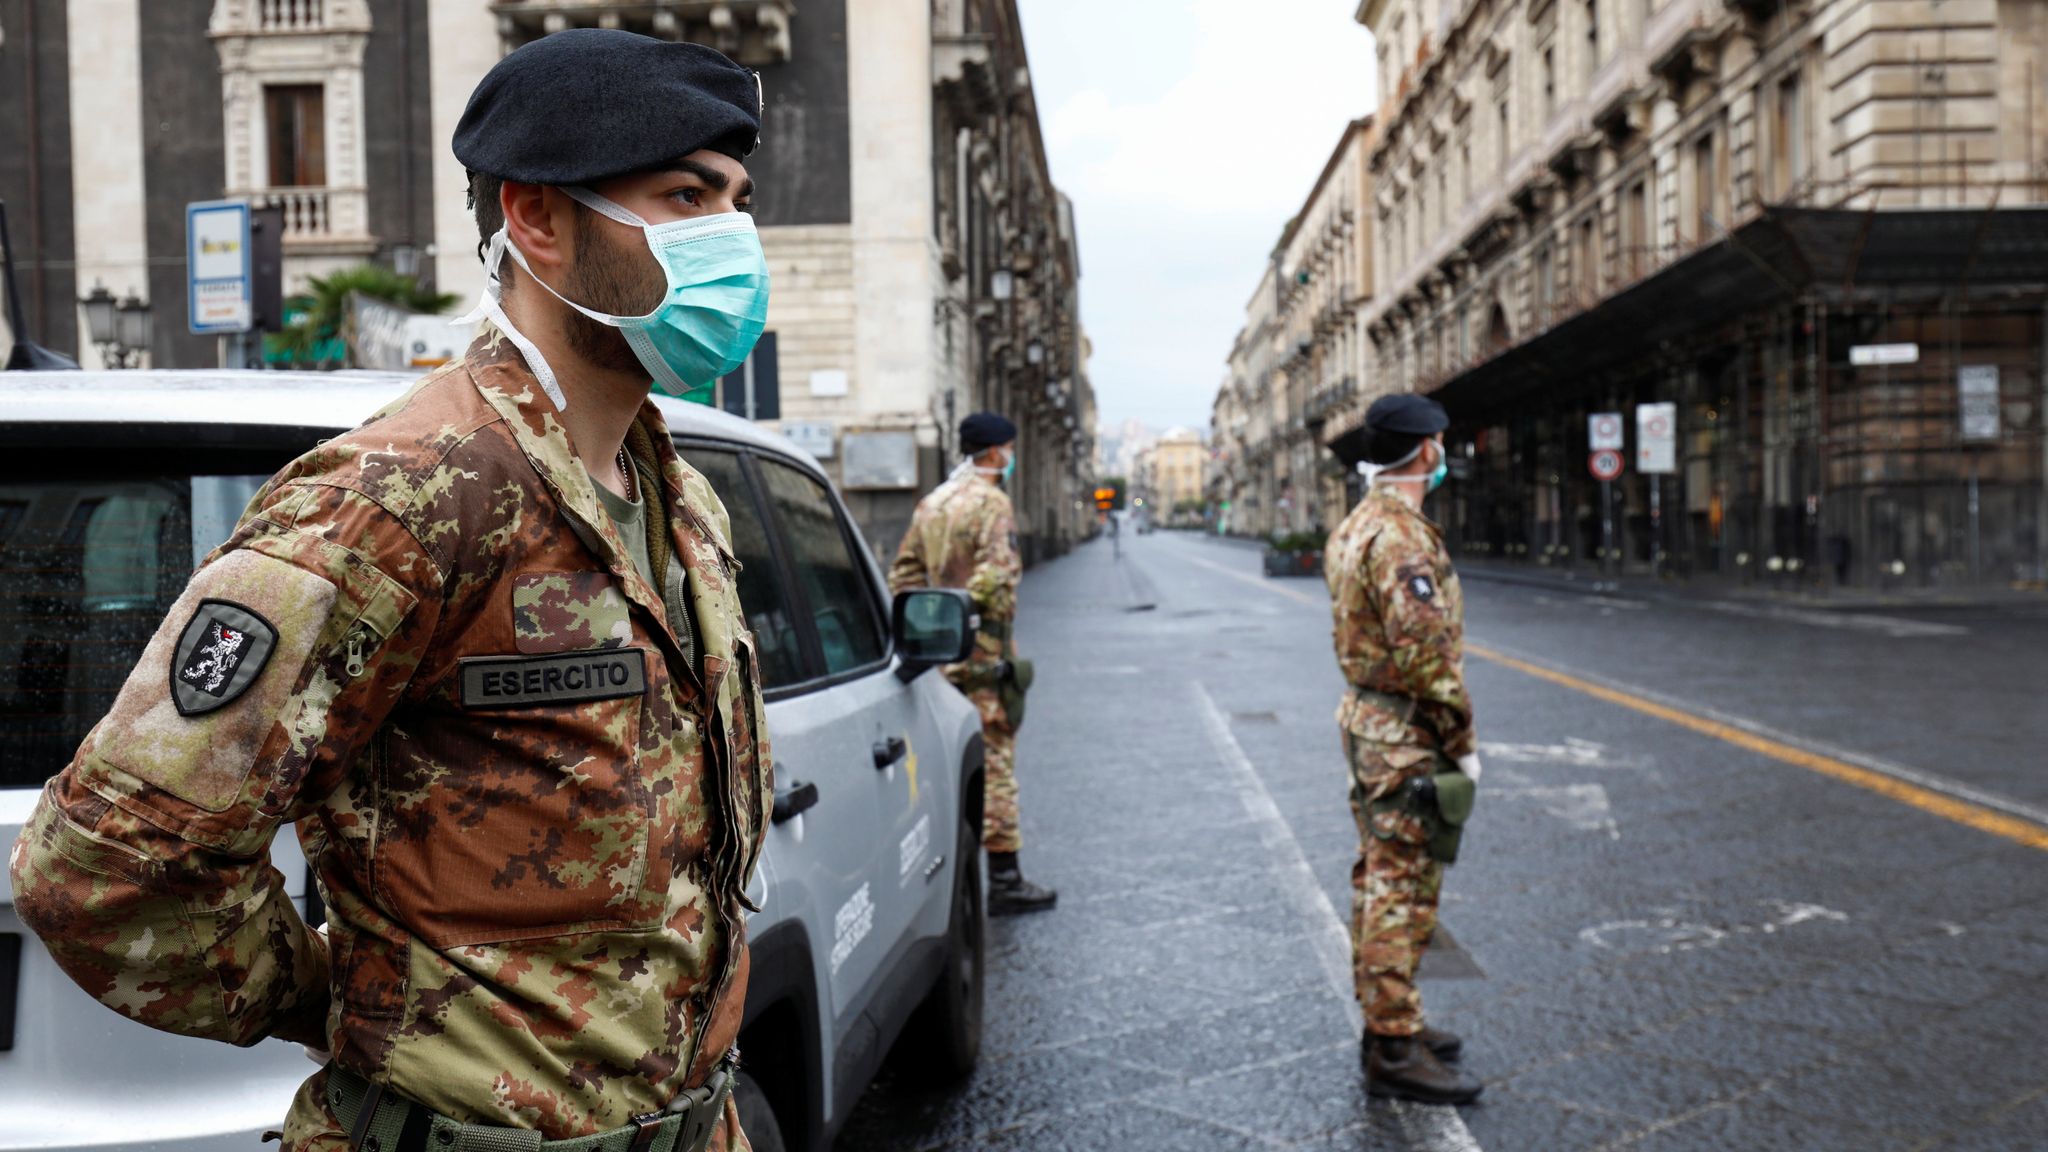 Ιταλία κορονοϊός: Γιατί η γειτονική χώρα καταγράφει τόσους θανάτους